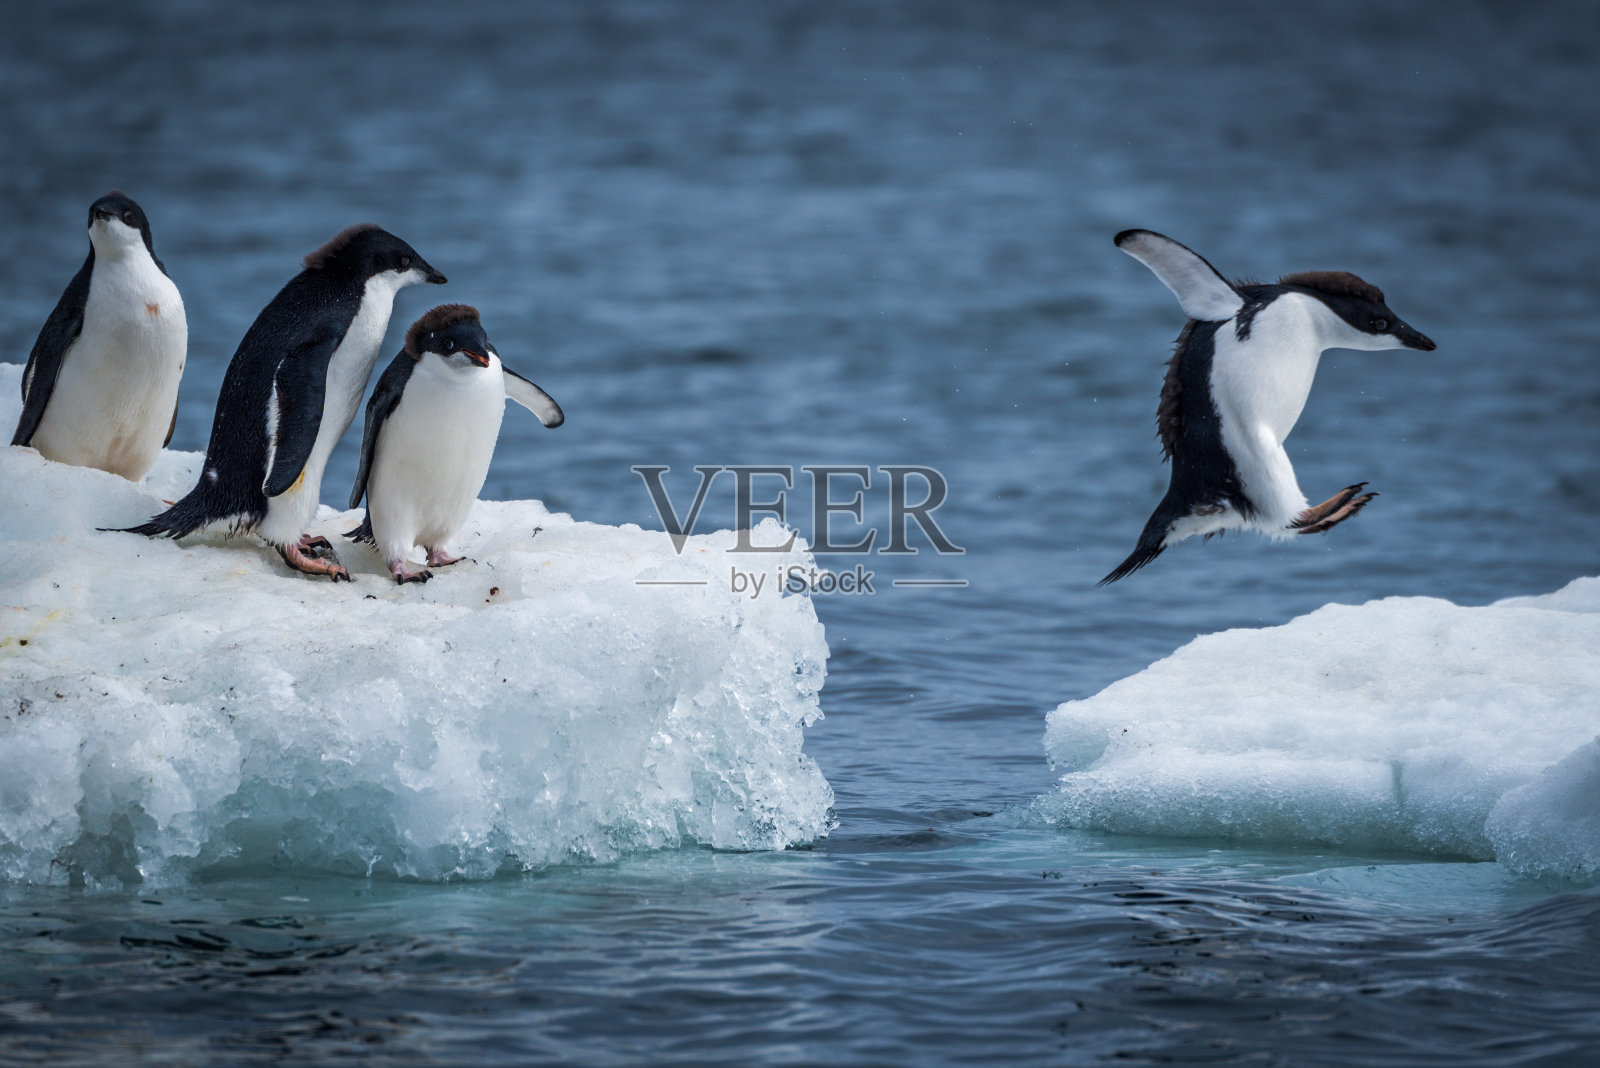 阿德利企鹅在两块浮冰之间跳跃照片摄影图片